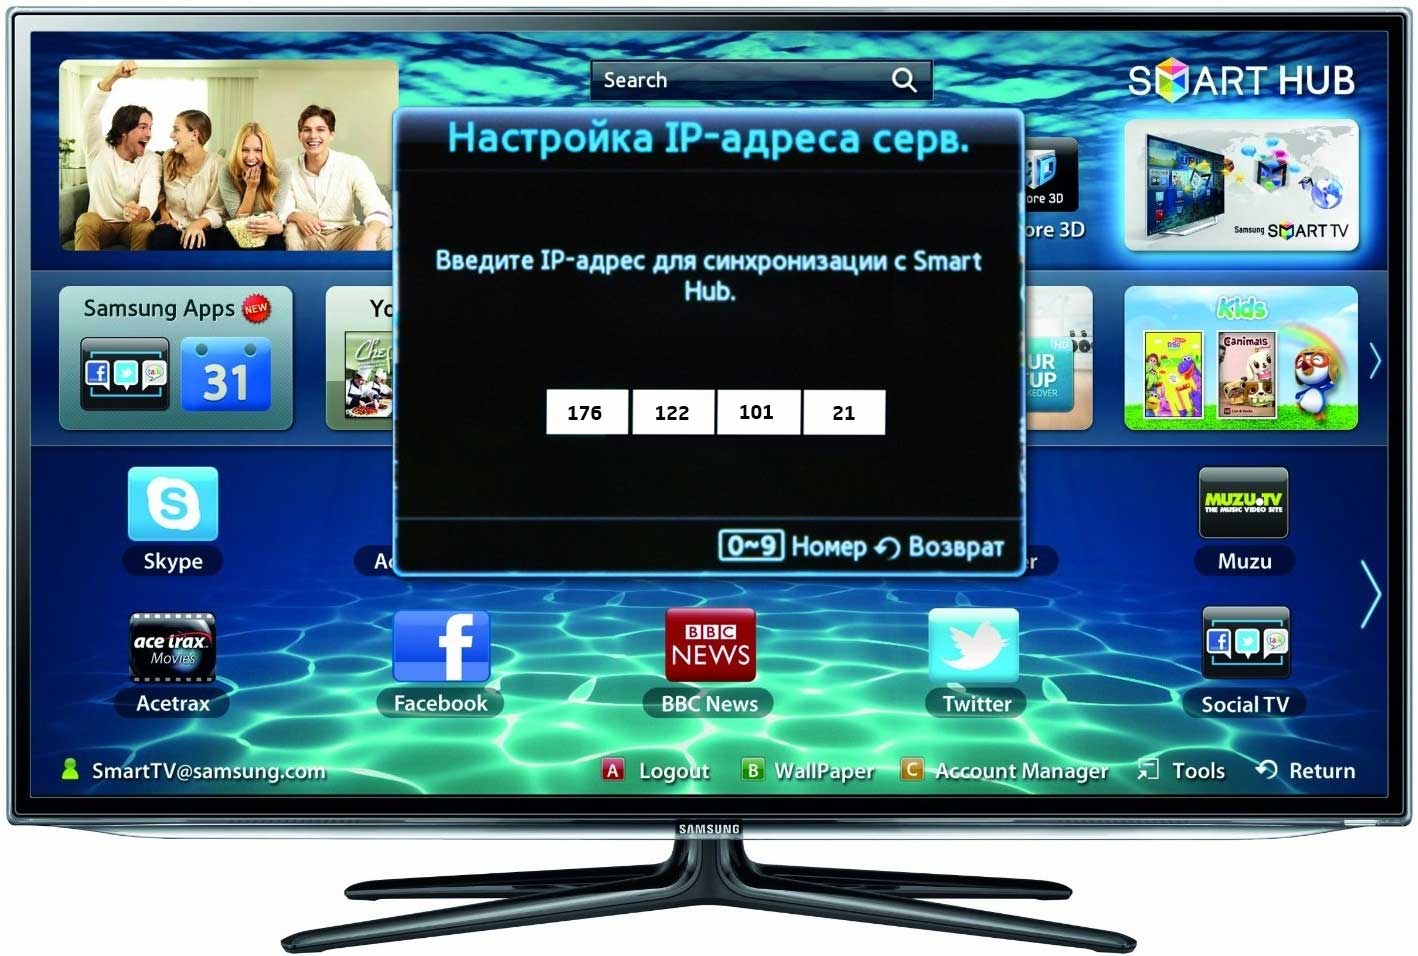 Приложения Смарт ТВ Самсунг: как скачать, установить и настроить официальные программы и сторонние виджеты, смотреть на телевизоре, регистрация